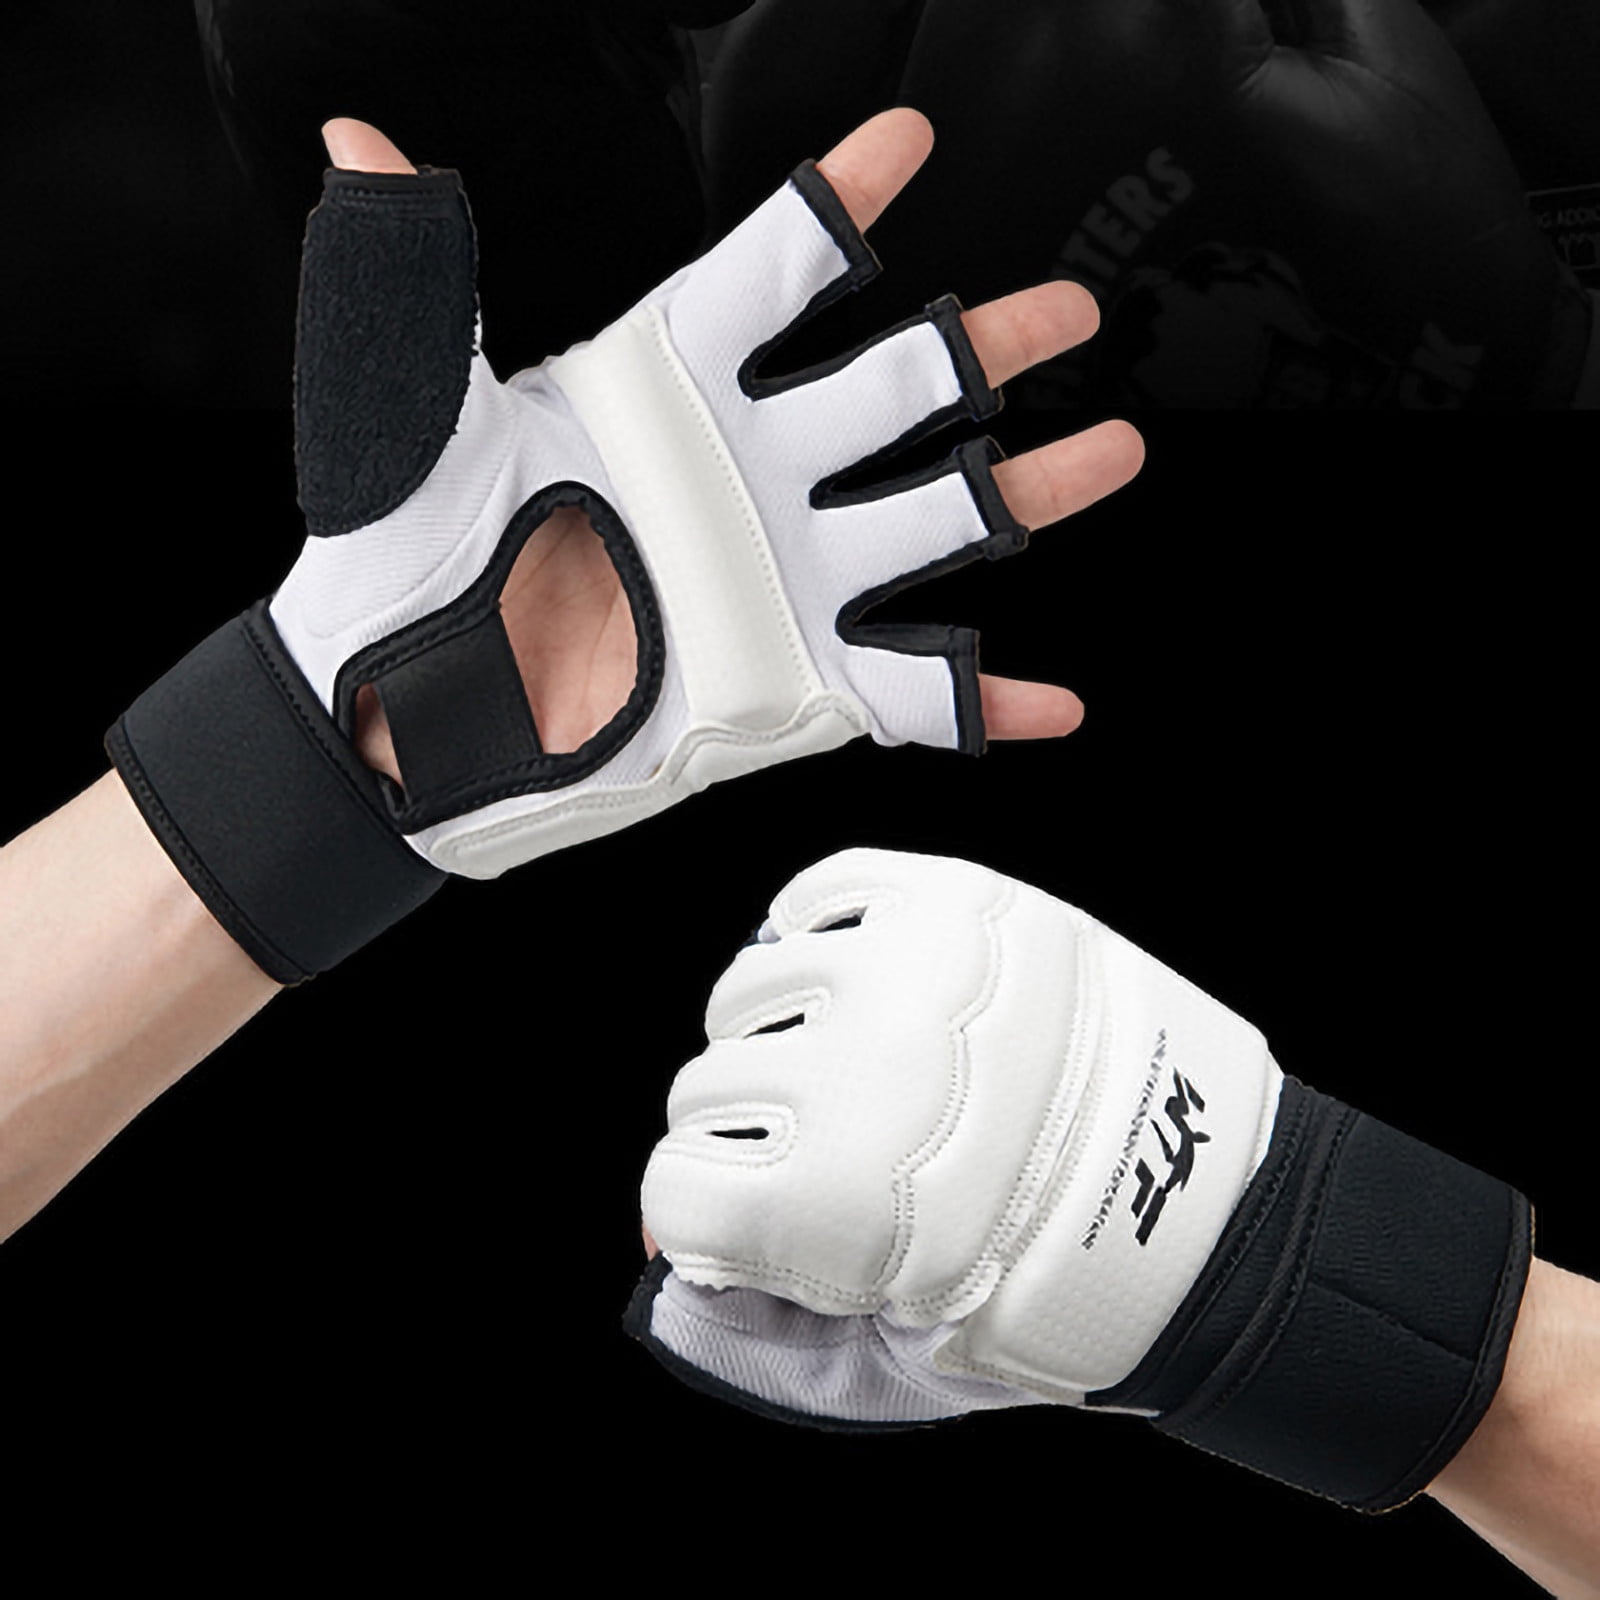 1 Pair PU Boxing Punching Bag Fighting Sanda Gloves with Wrist Wrap 